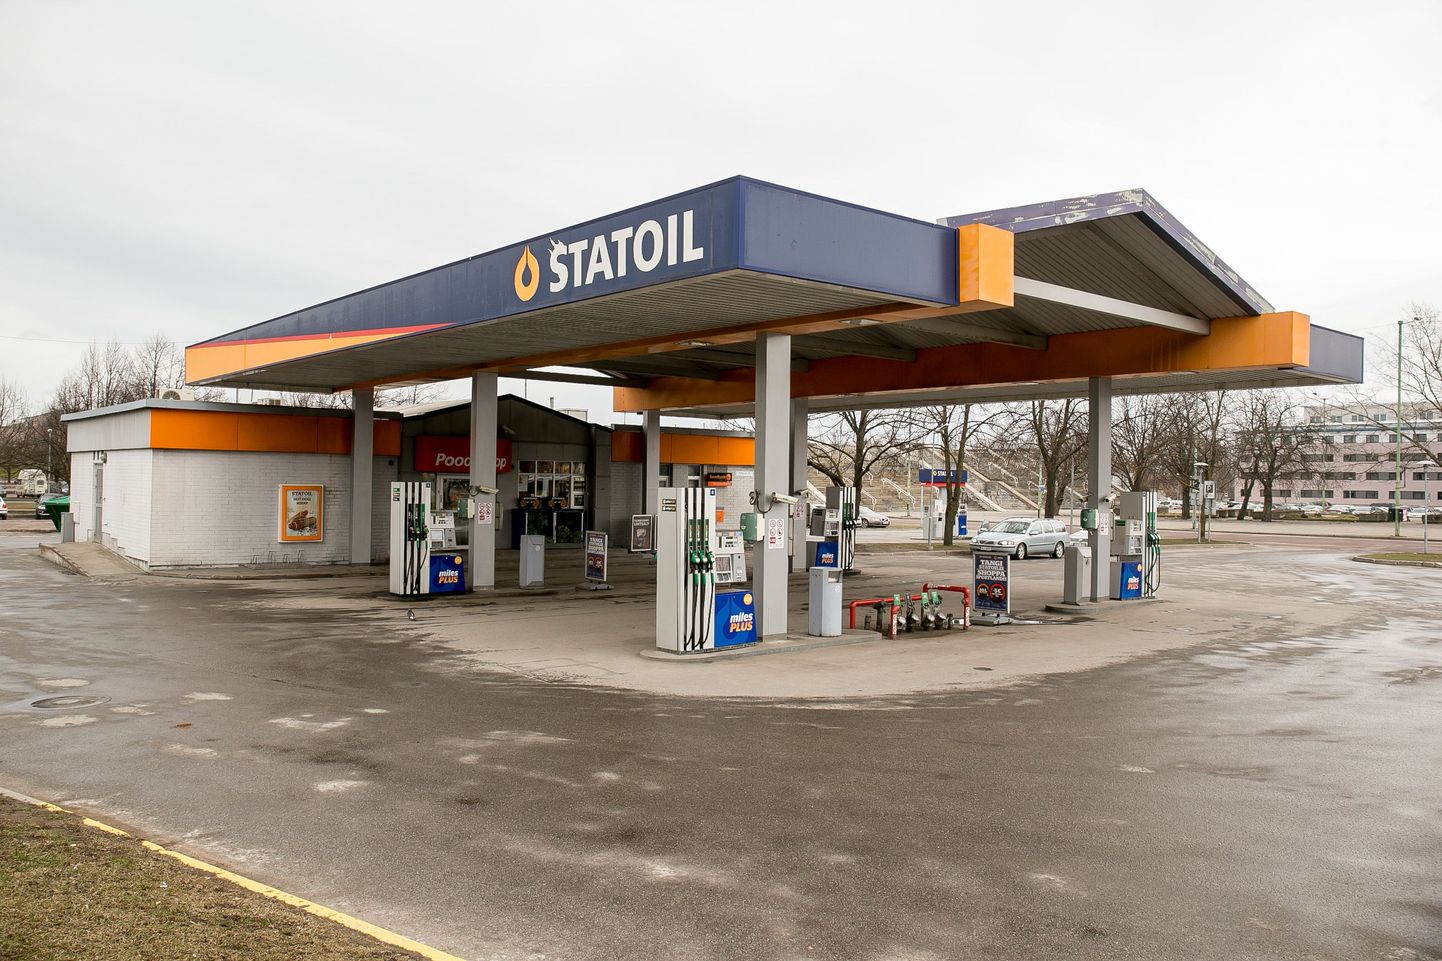 Juulikuus on Statoilil kampaania, kus peab igale kliendile jooki pakkuma.